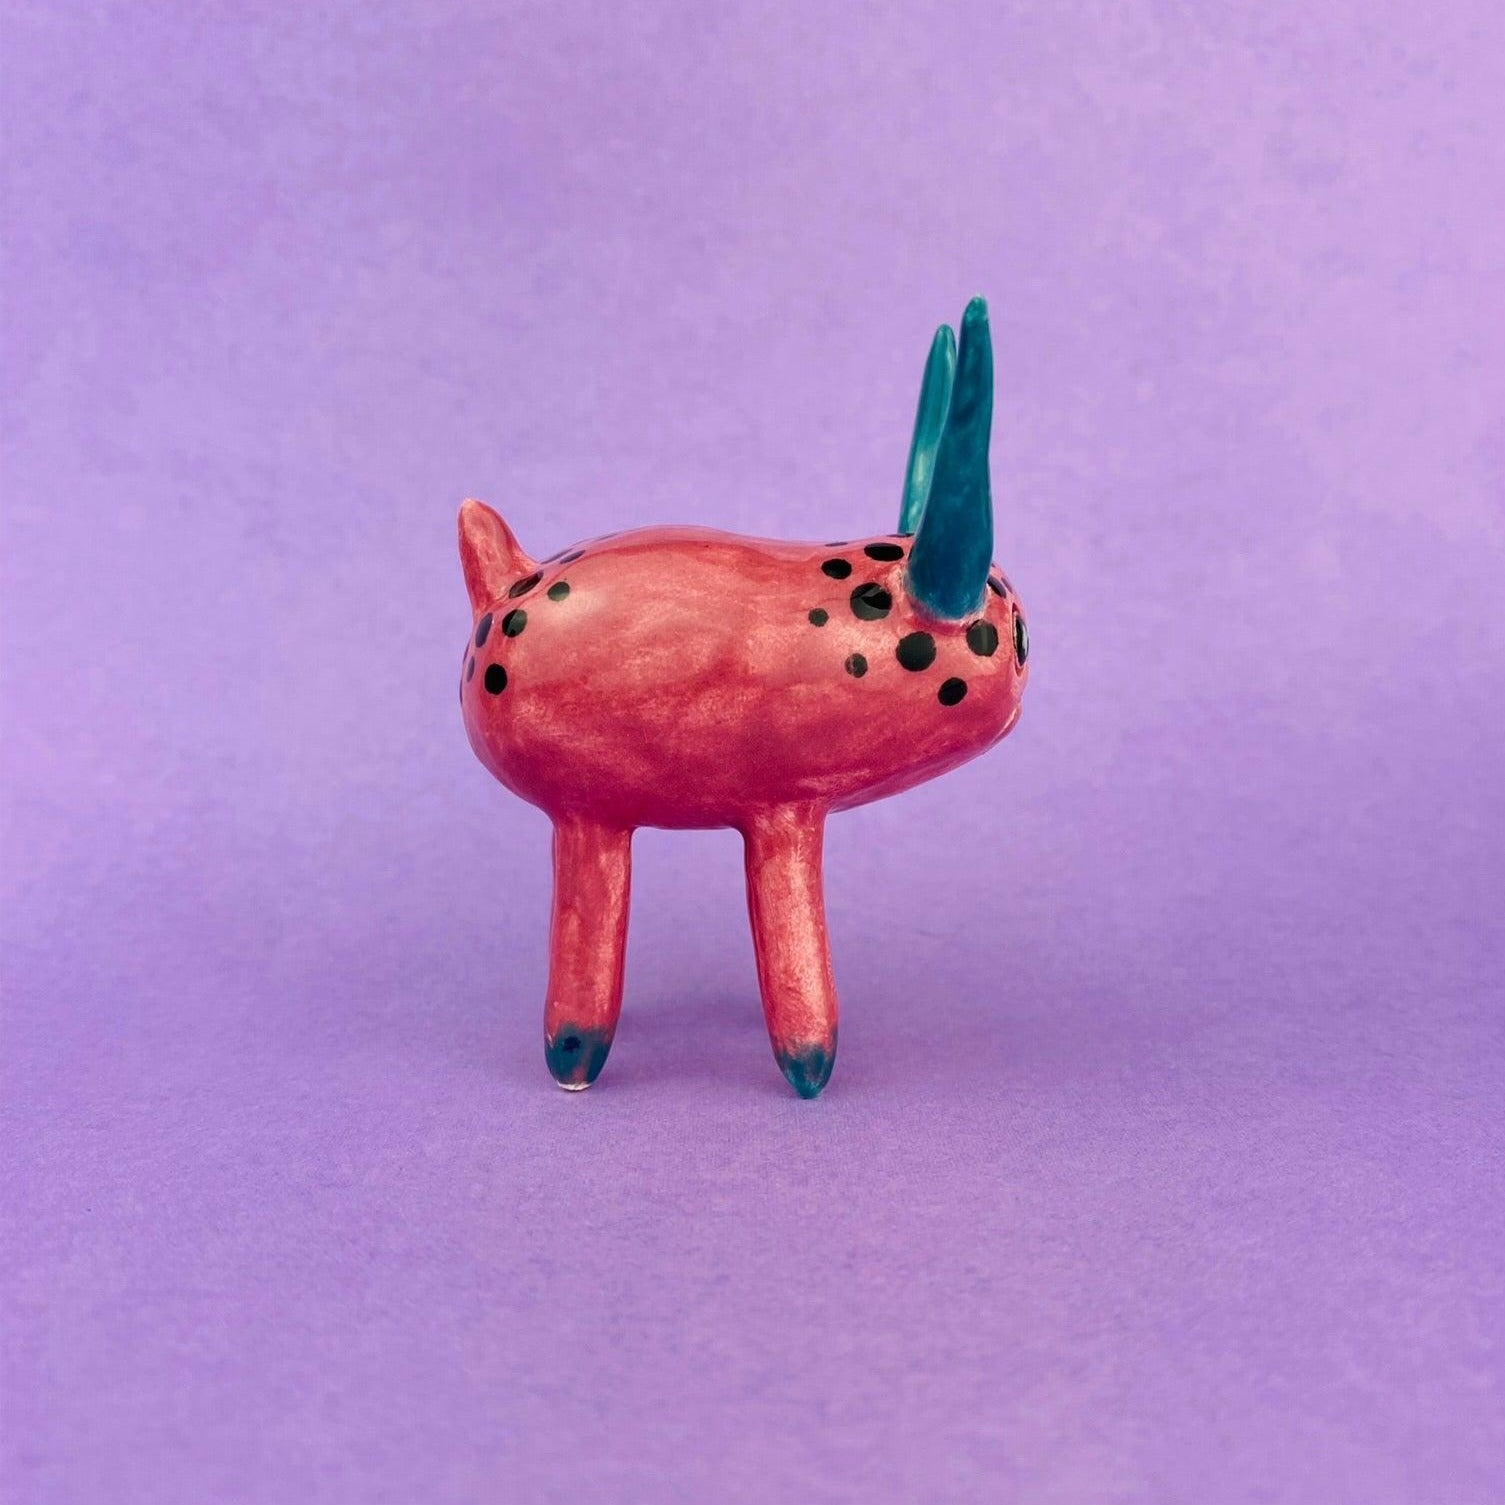 Cosmic Deer - Handmade Pink Deer Figurine Politely Declining